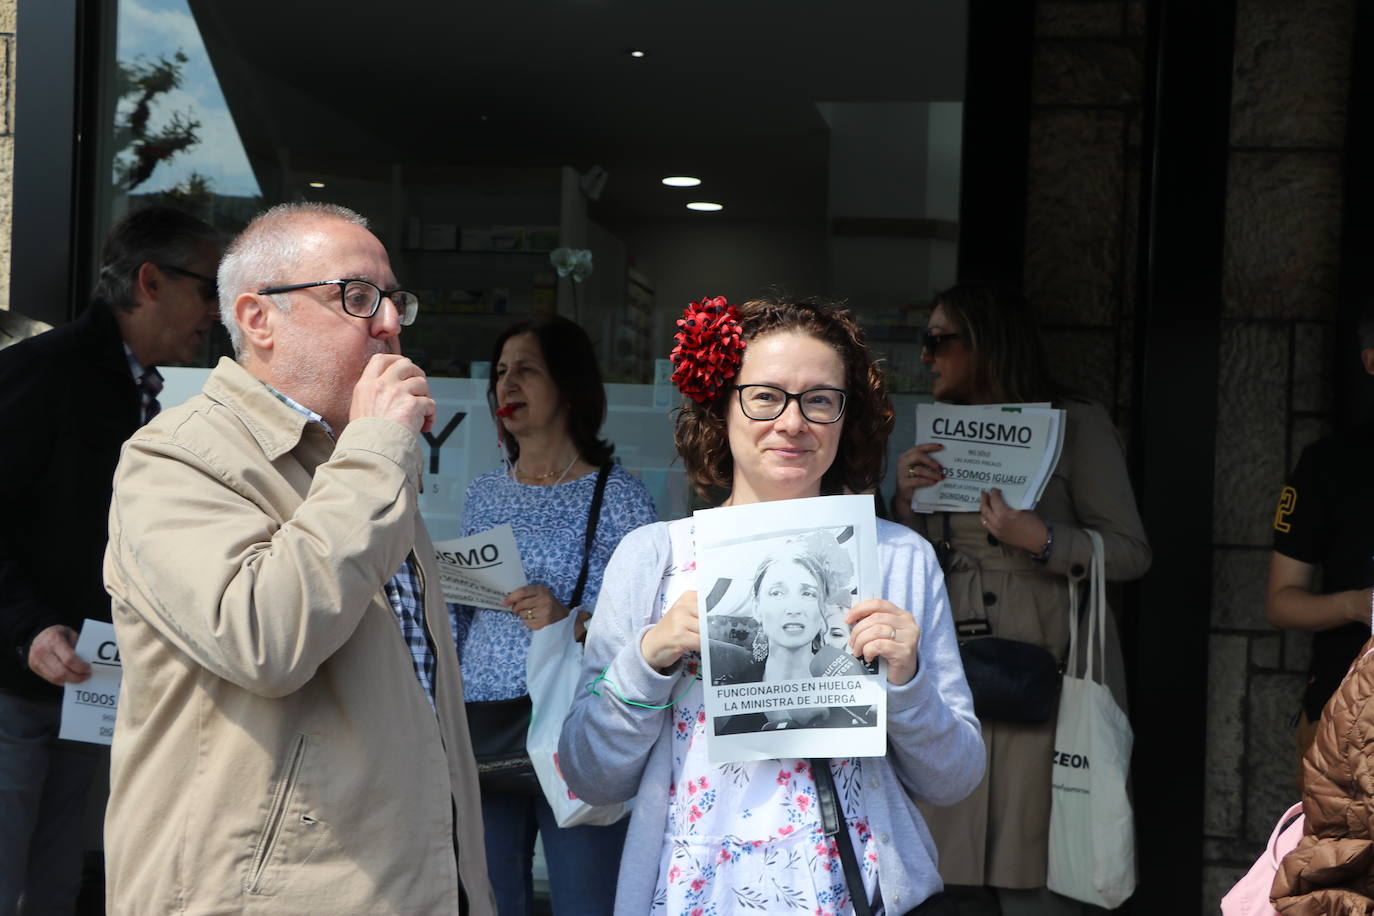 La huelga de los funcionarios de Justicia obliga a suspender 40 juicios diarios en la ciudad de León